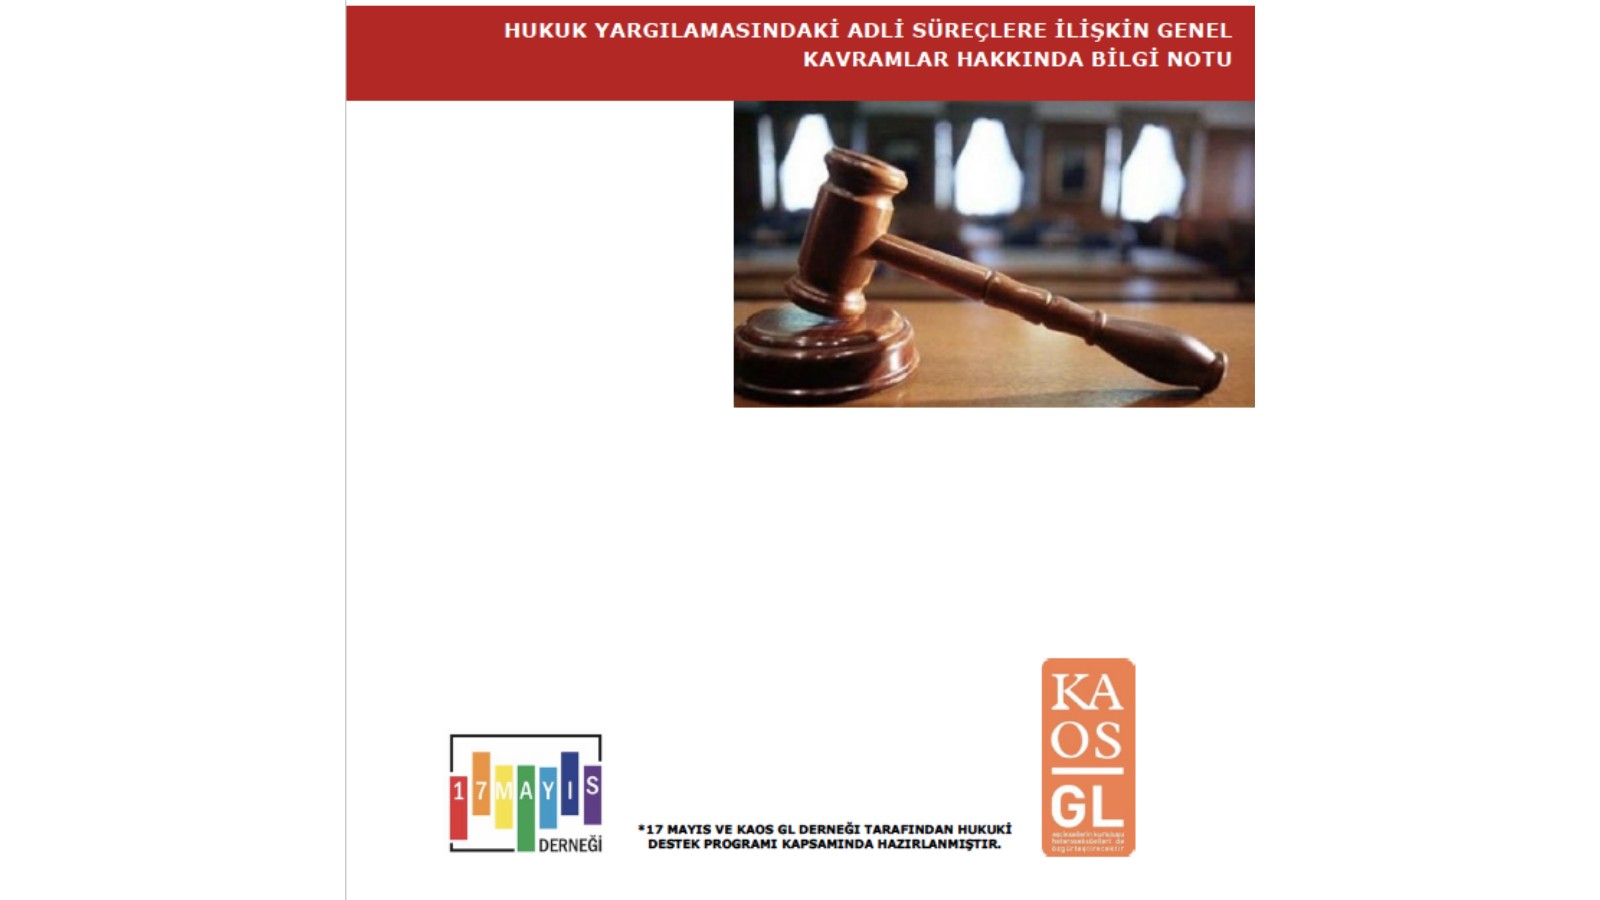 Hukuk Yargılamasındaki Adli Süreçlere İlişkin Genel Kavramlar Hakkında Bilgi Notu - 17 Mayıs